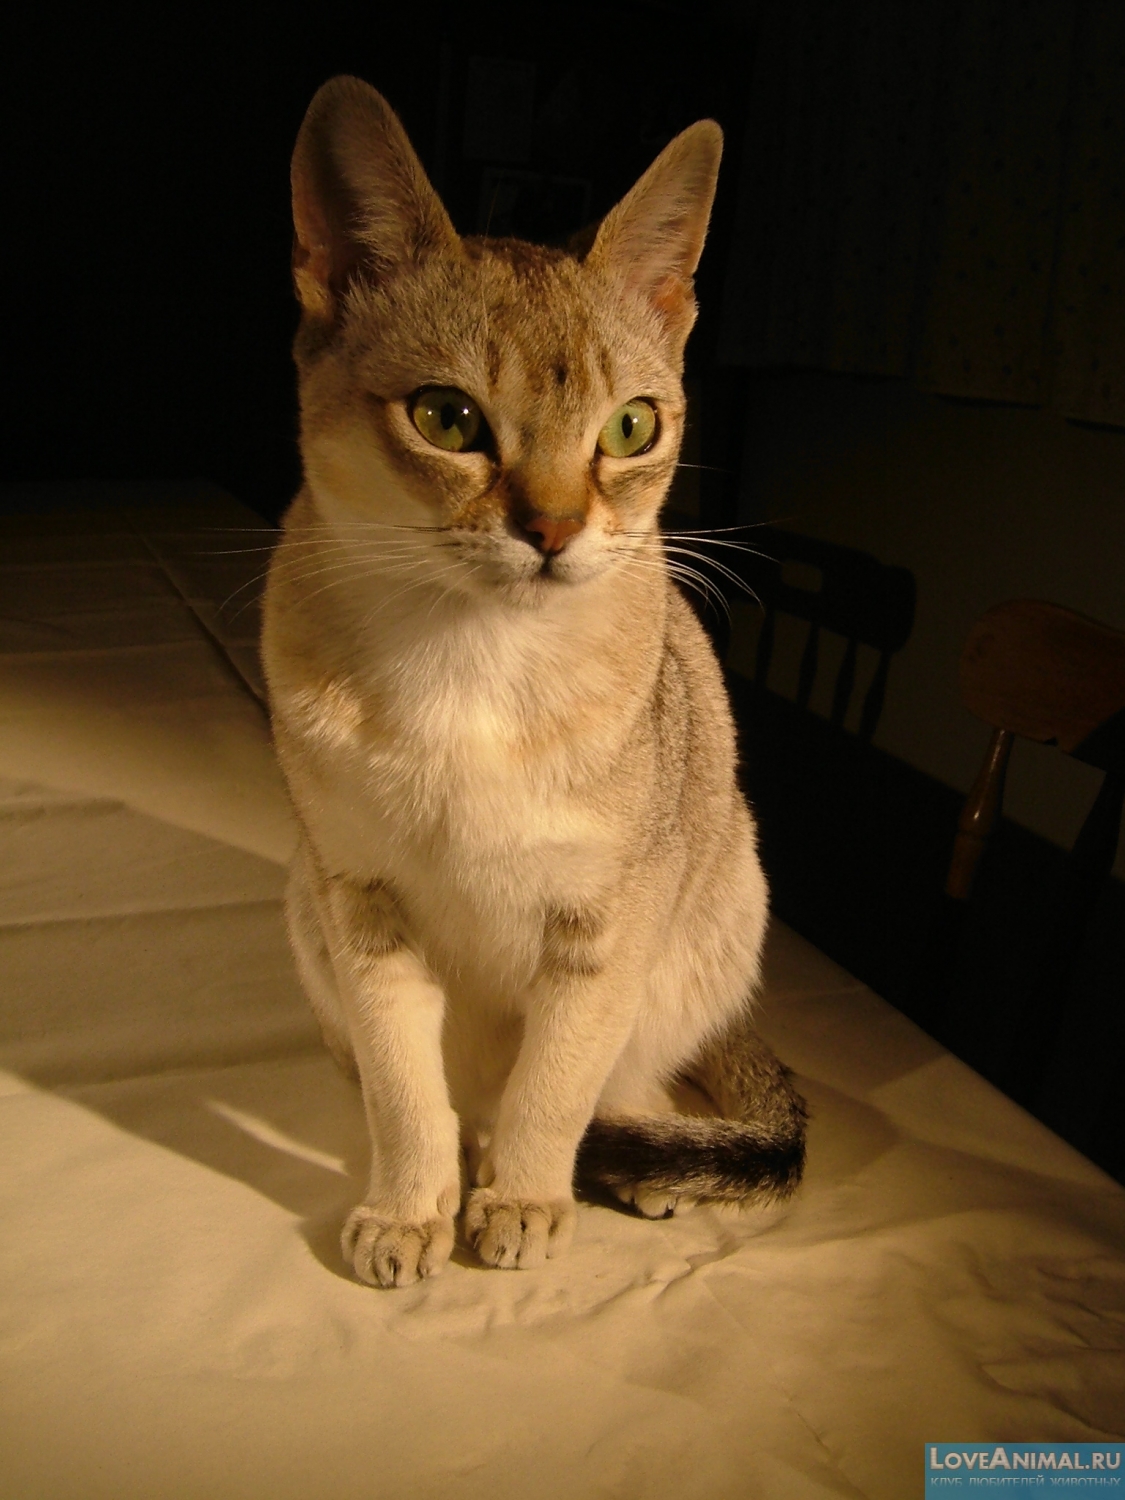 Сингапурская кошка, или сингапура (Singapura Cat)